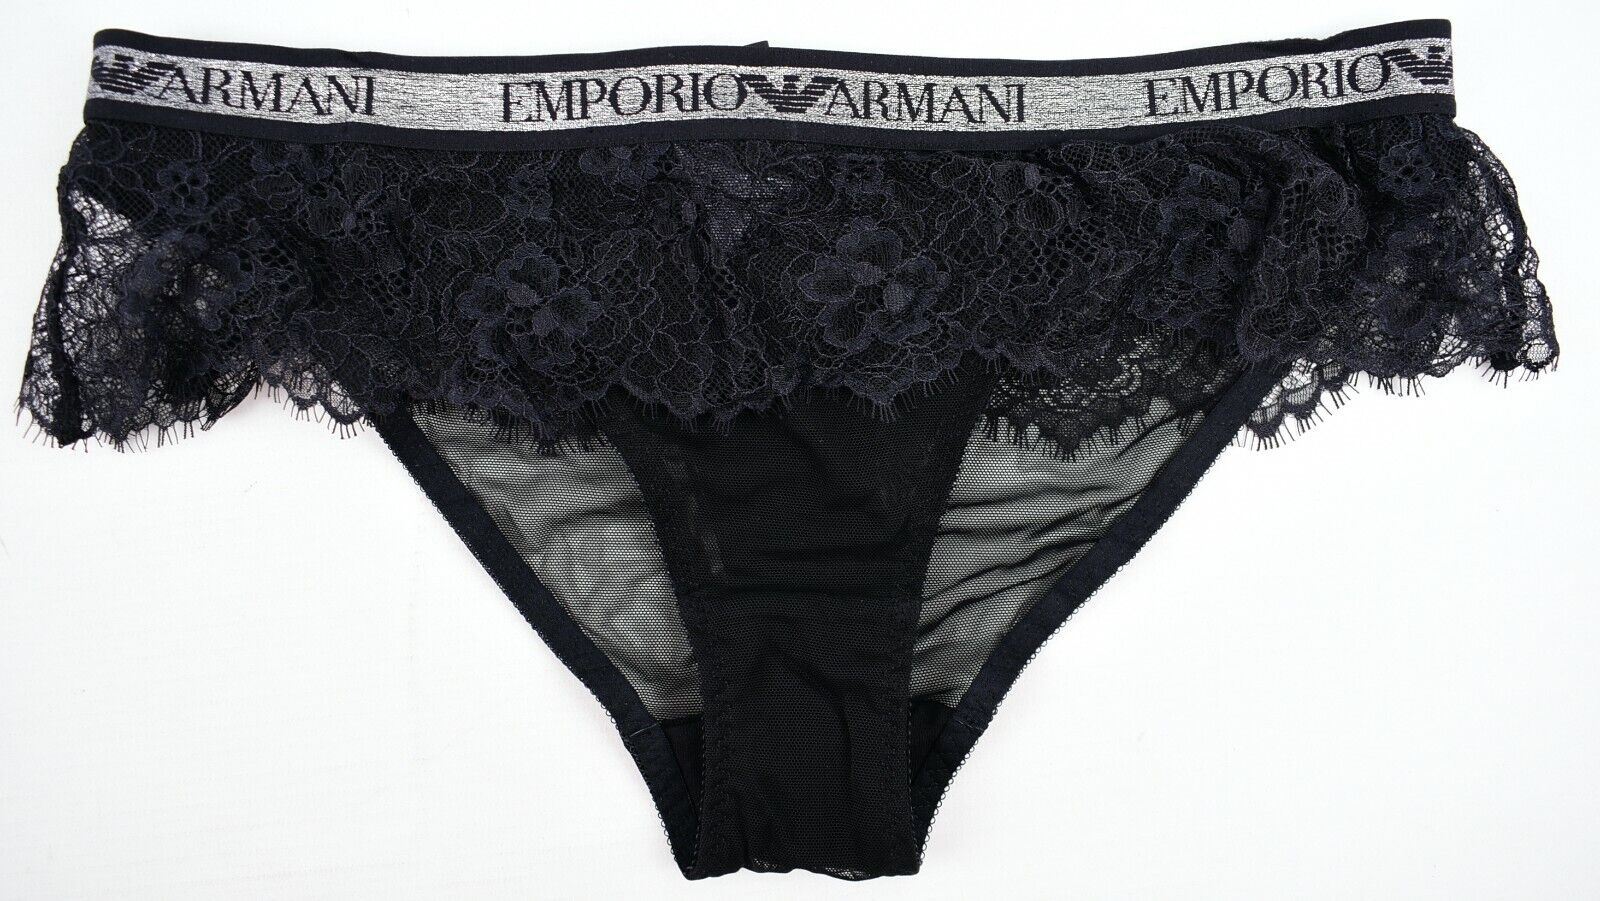 EMPORIO ARMANI Underwear: Women's Black Lace Frill Briefs Knickers, size S